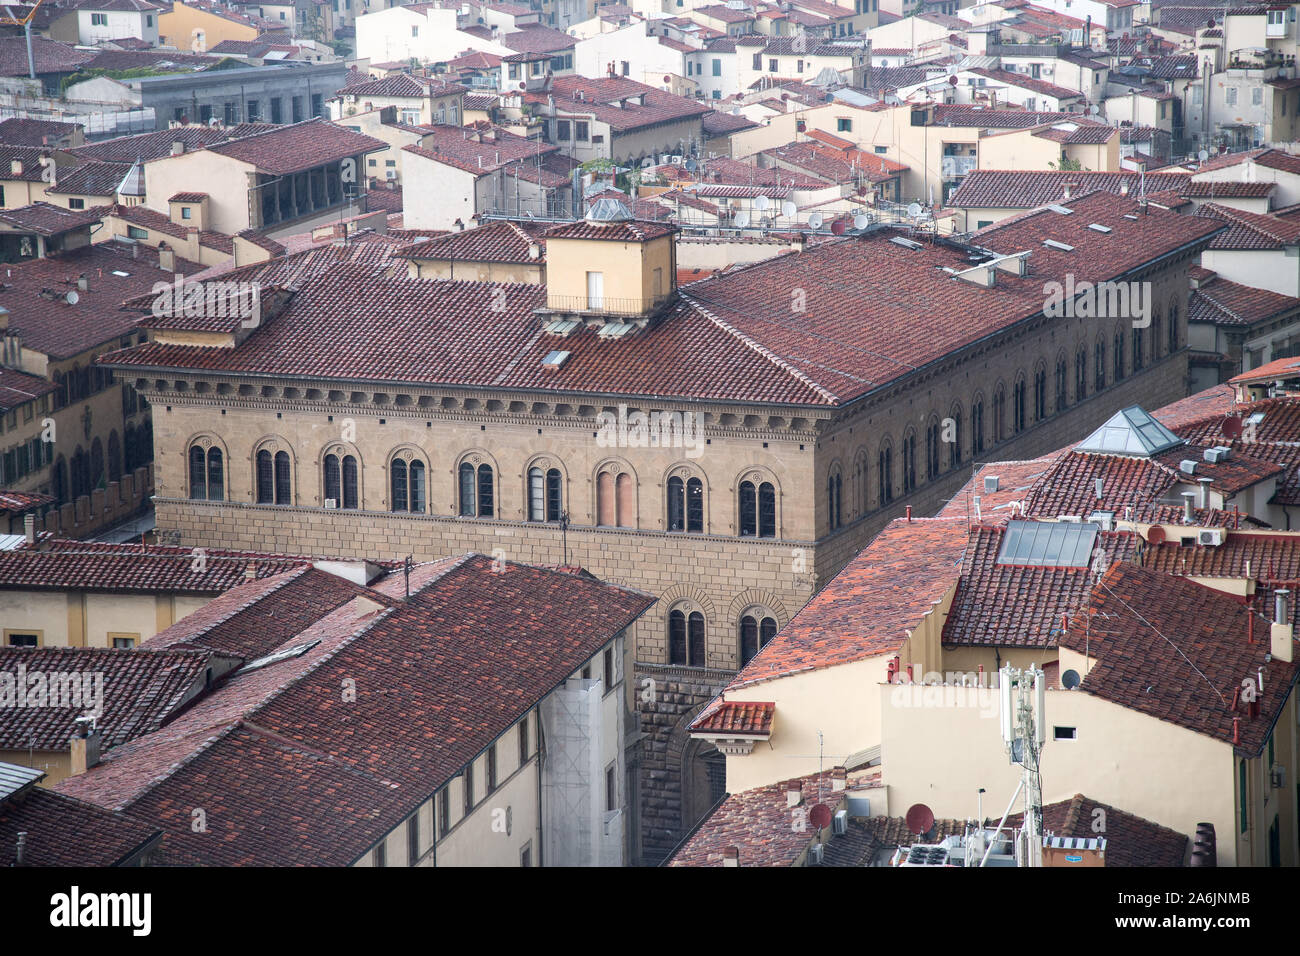 Rinascimentale Palazzo Medici Riccardi (Palazzo Medici Riccardi) per la famiglia dei Medici nel centro storico di Firenze elencati dall'UNESCO Patrimonio dell'umanità. Firenze, Foto Stock